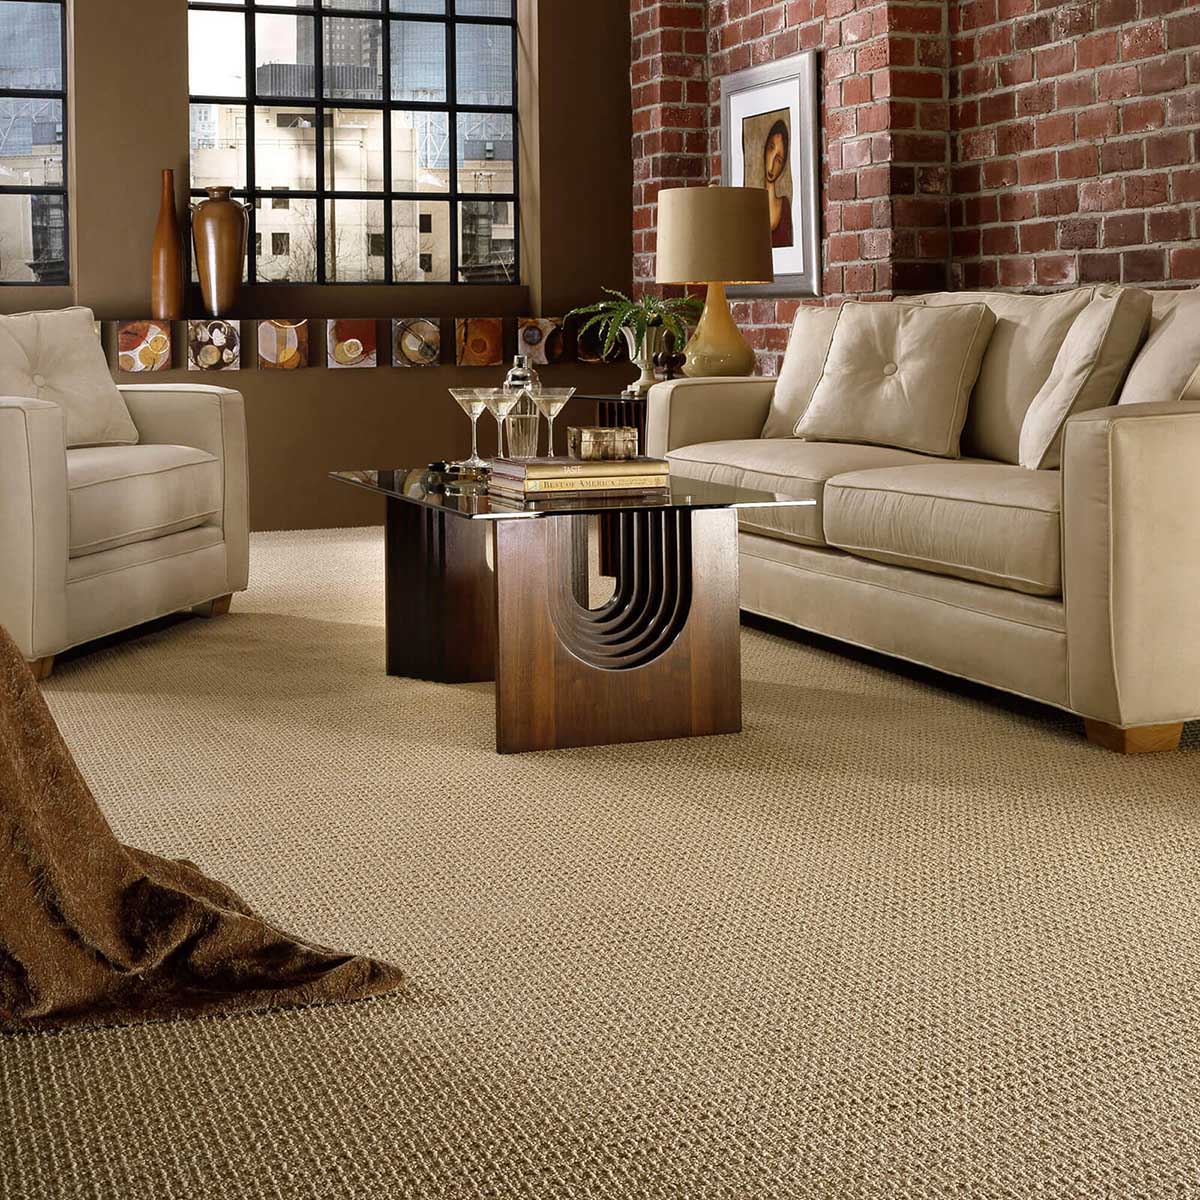 Living room carpet floor | Baker Valley Floors